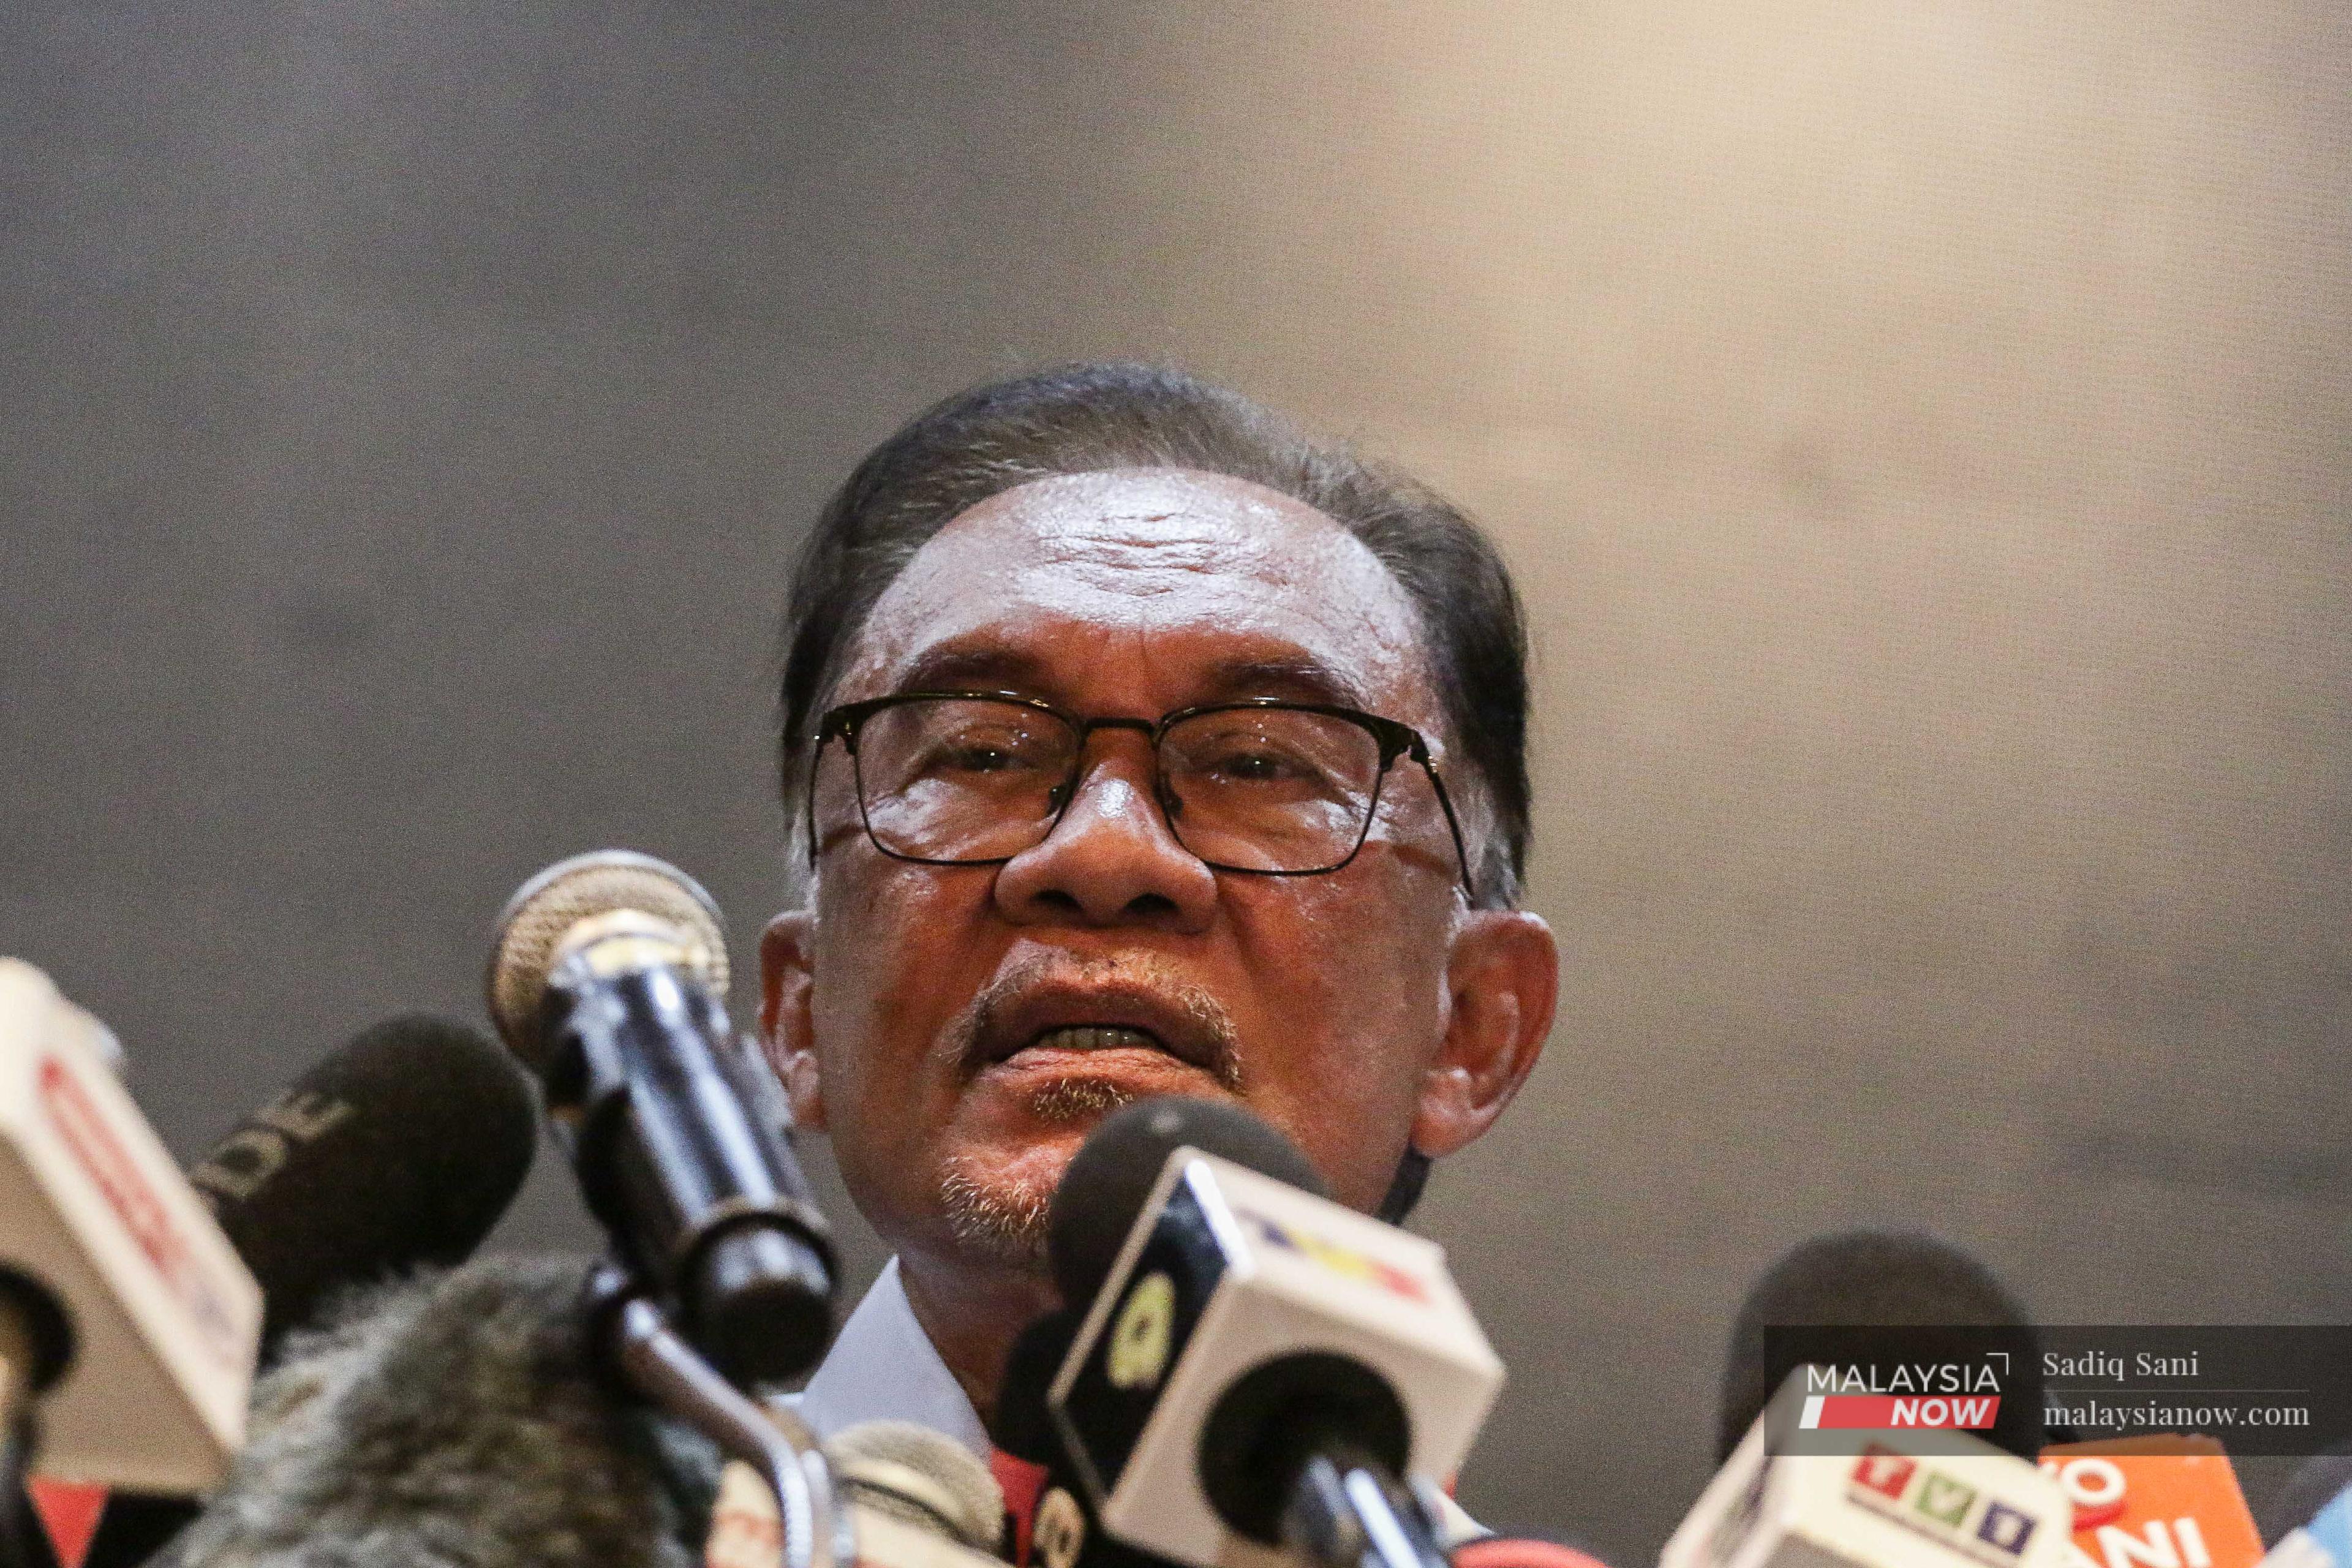 Pengerusi Pakatan Harapan Anwar Ibrahim bercakap pada sidang media di Kuala Lumpur hari ini.